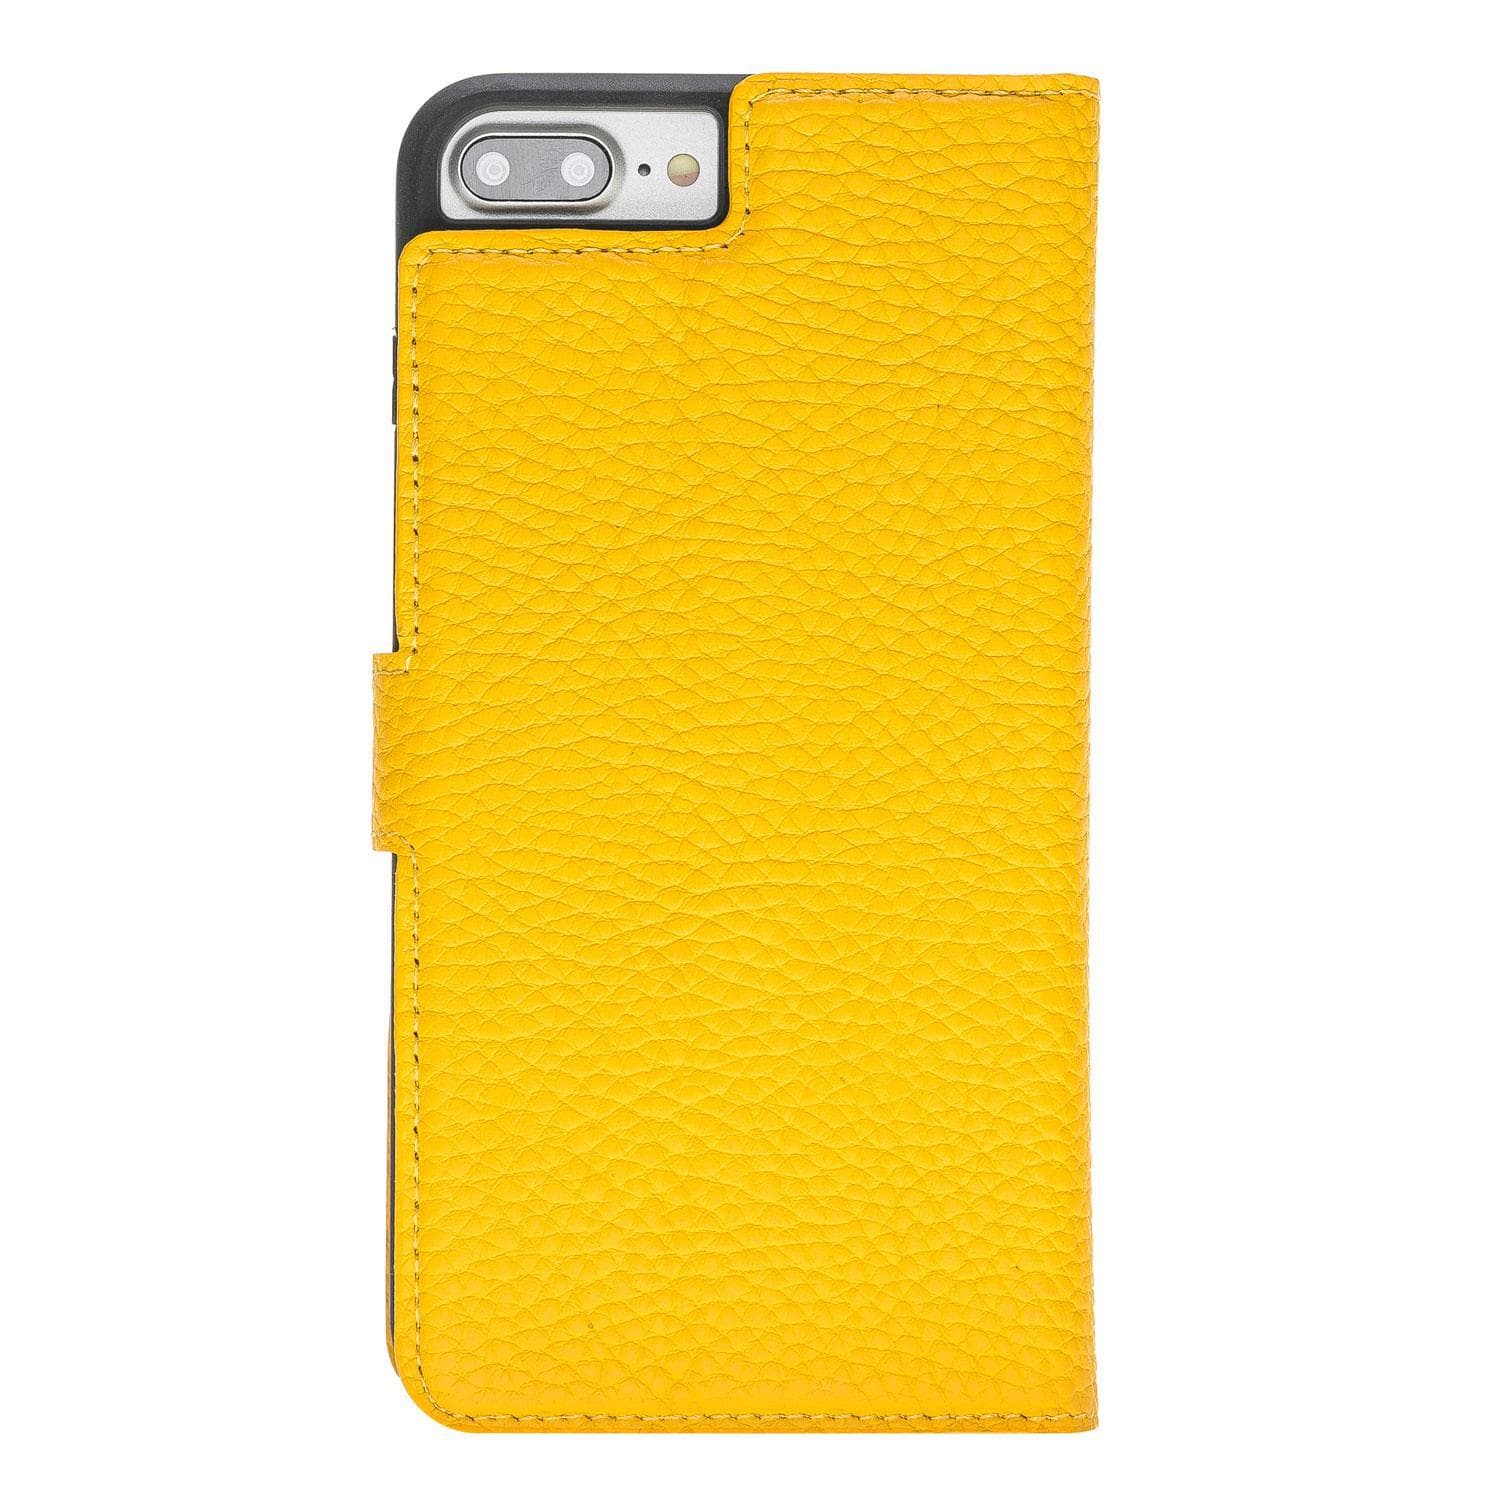 B2B - Apple iPhone 8/7 Plus Detachable Leather Case / MW Bouletta Shop